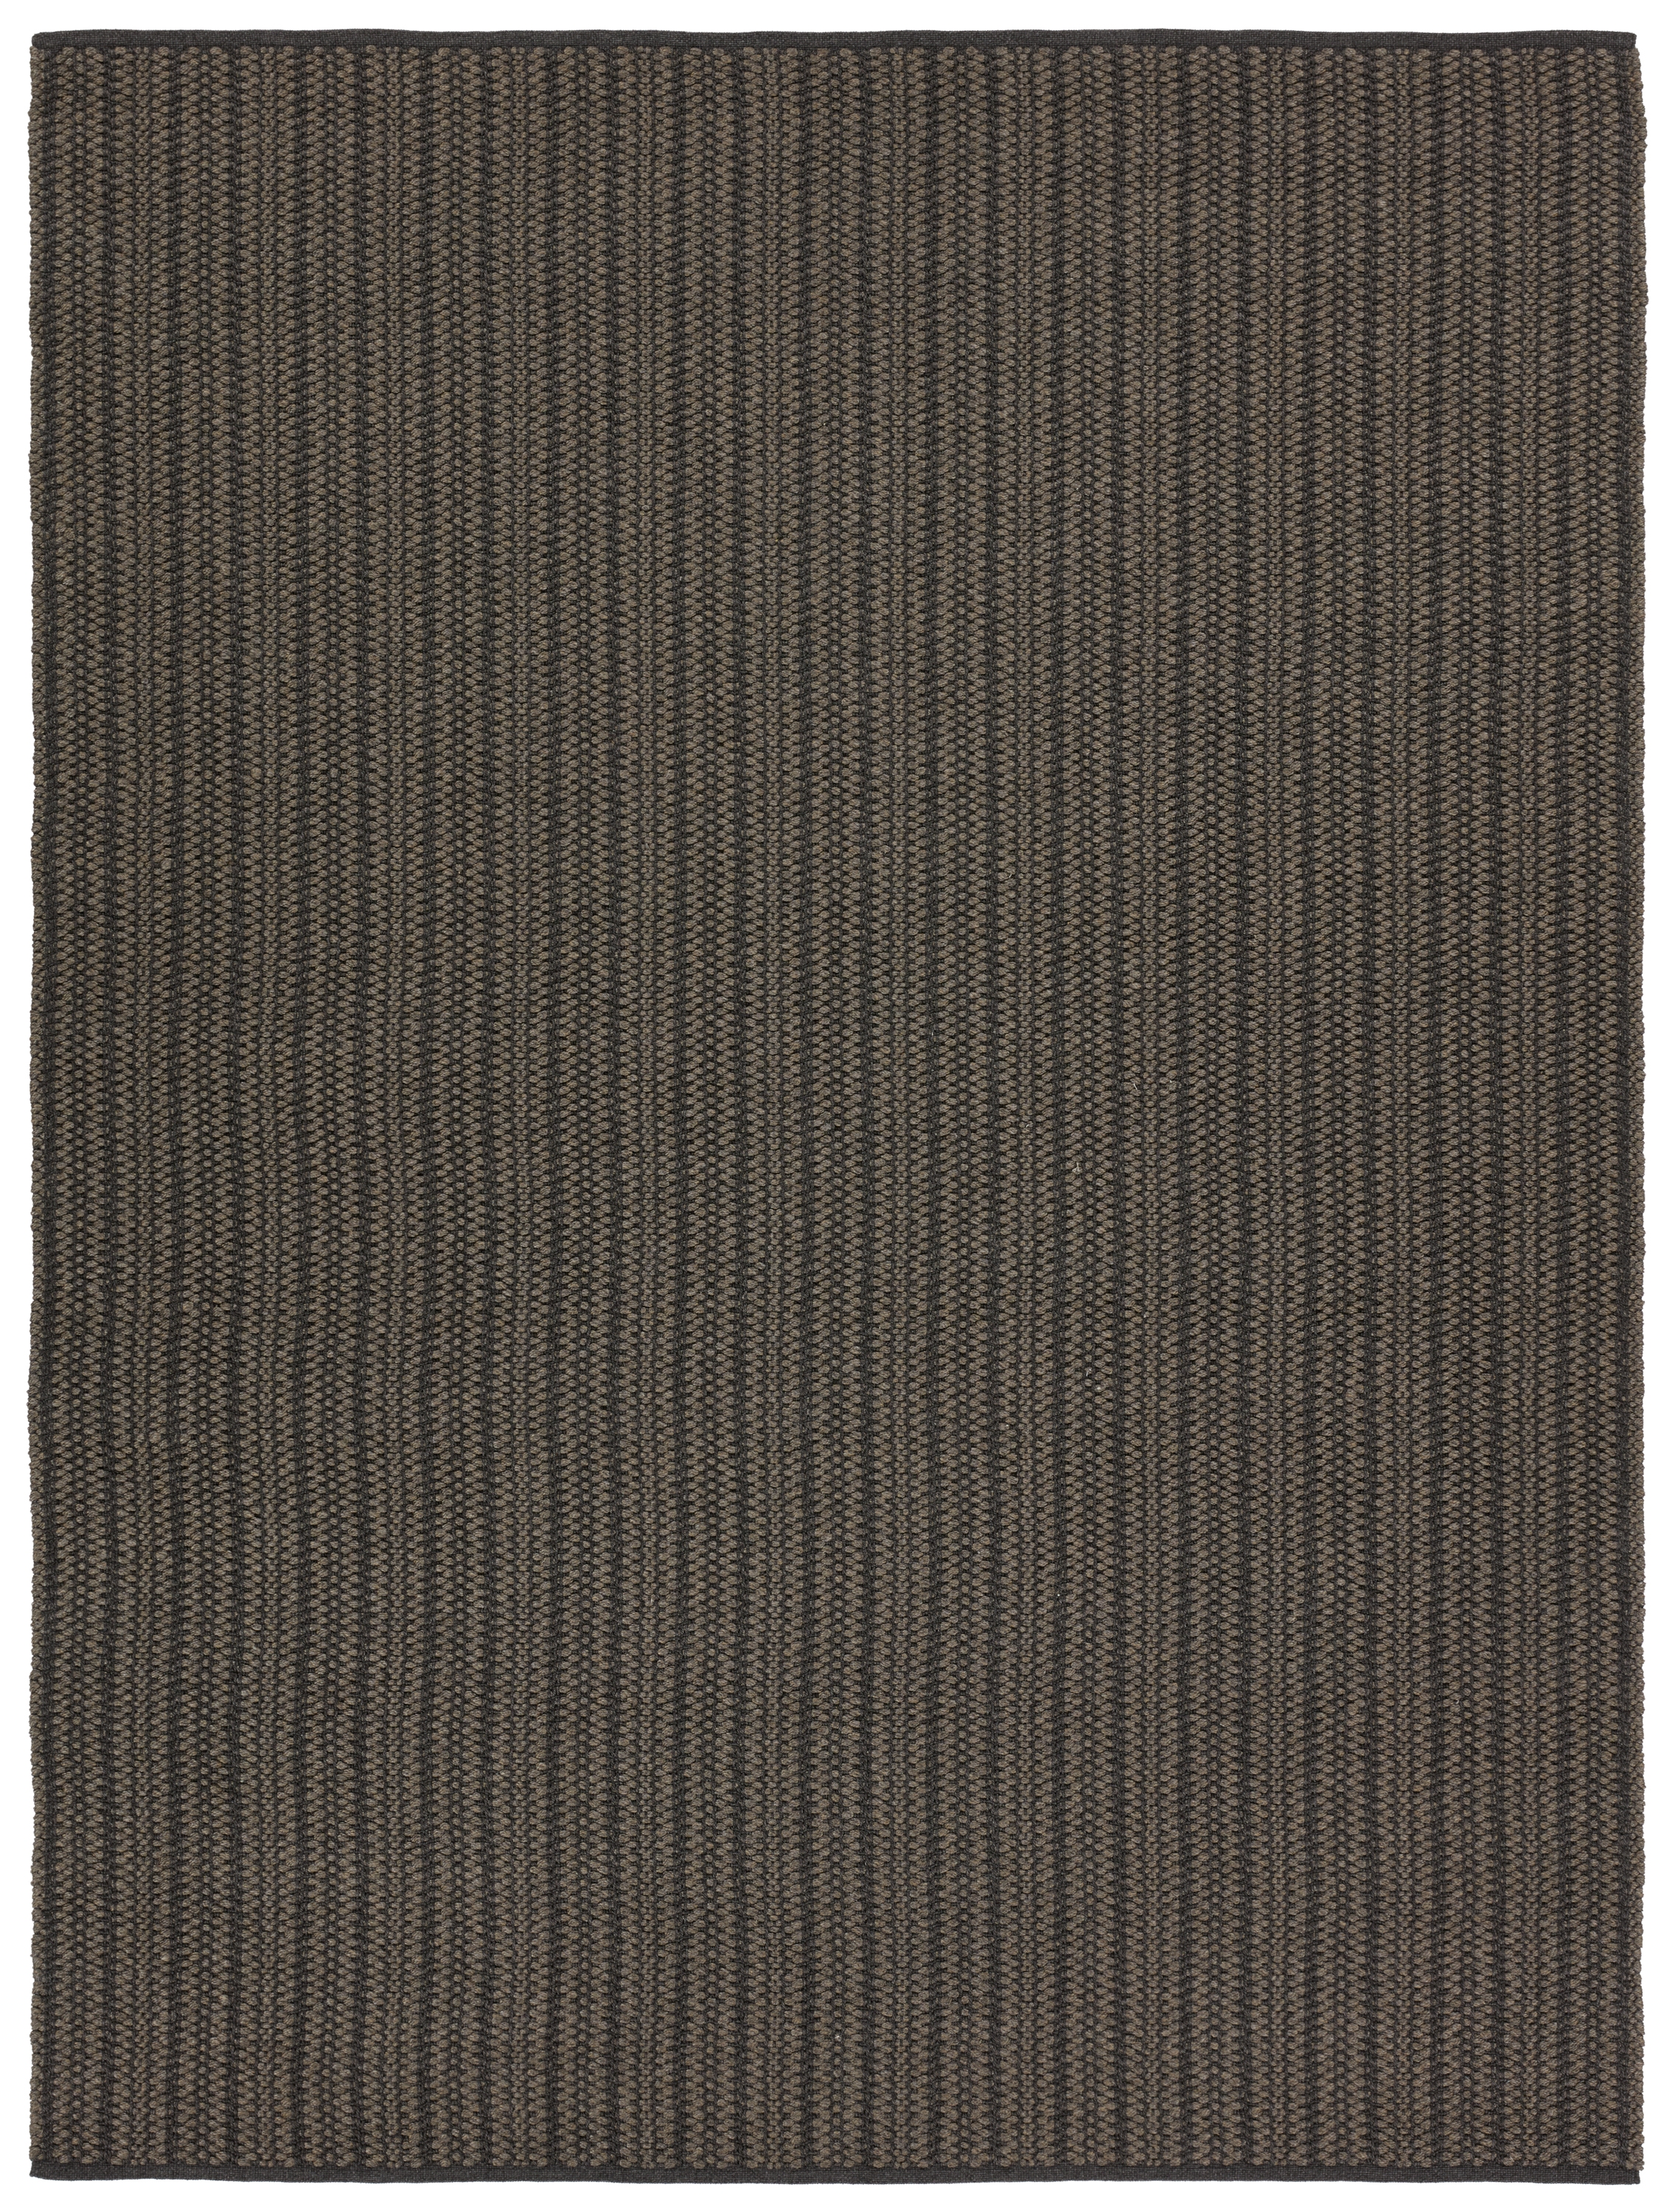 Elmas Handmade Indoor/Outdoor Striped Gray/Charcoal Area Rug (9'X12') - Image 0